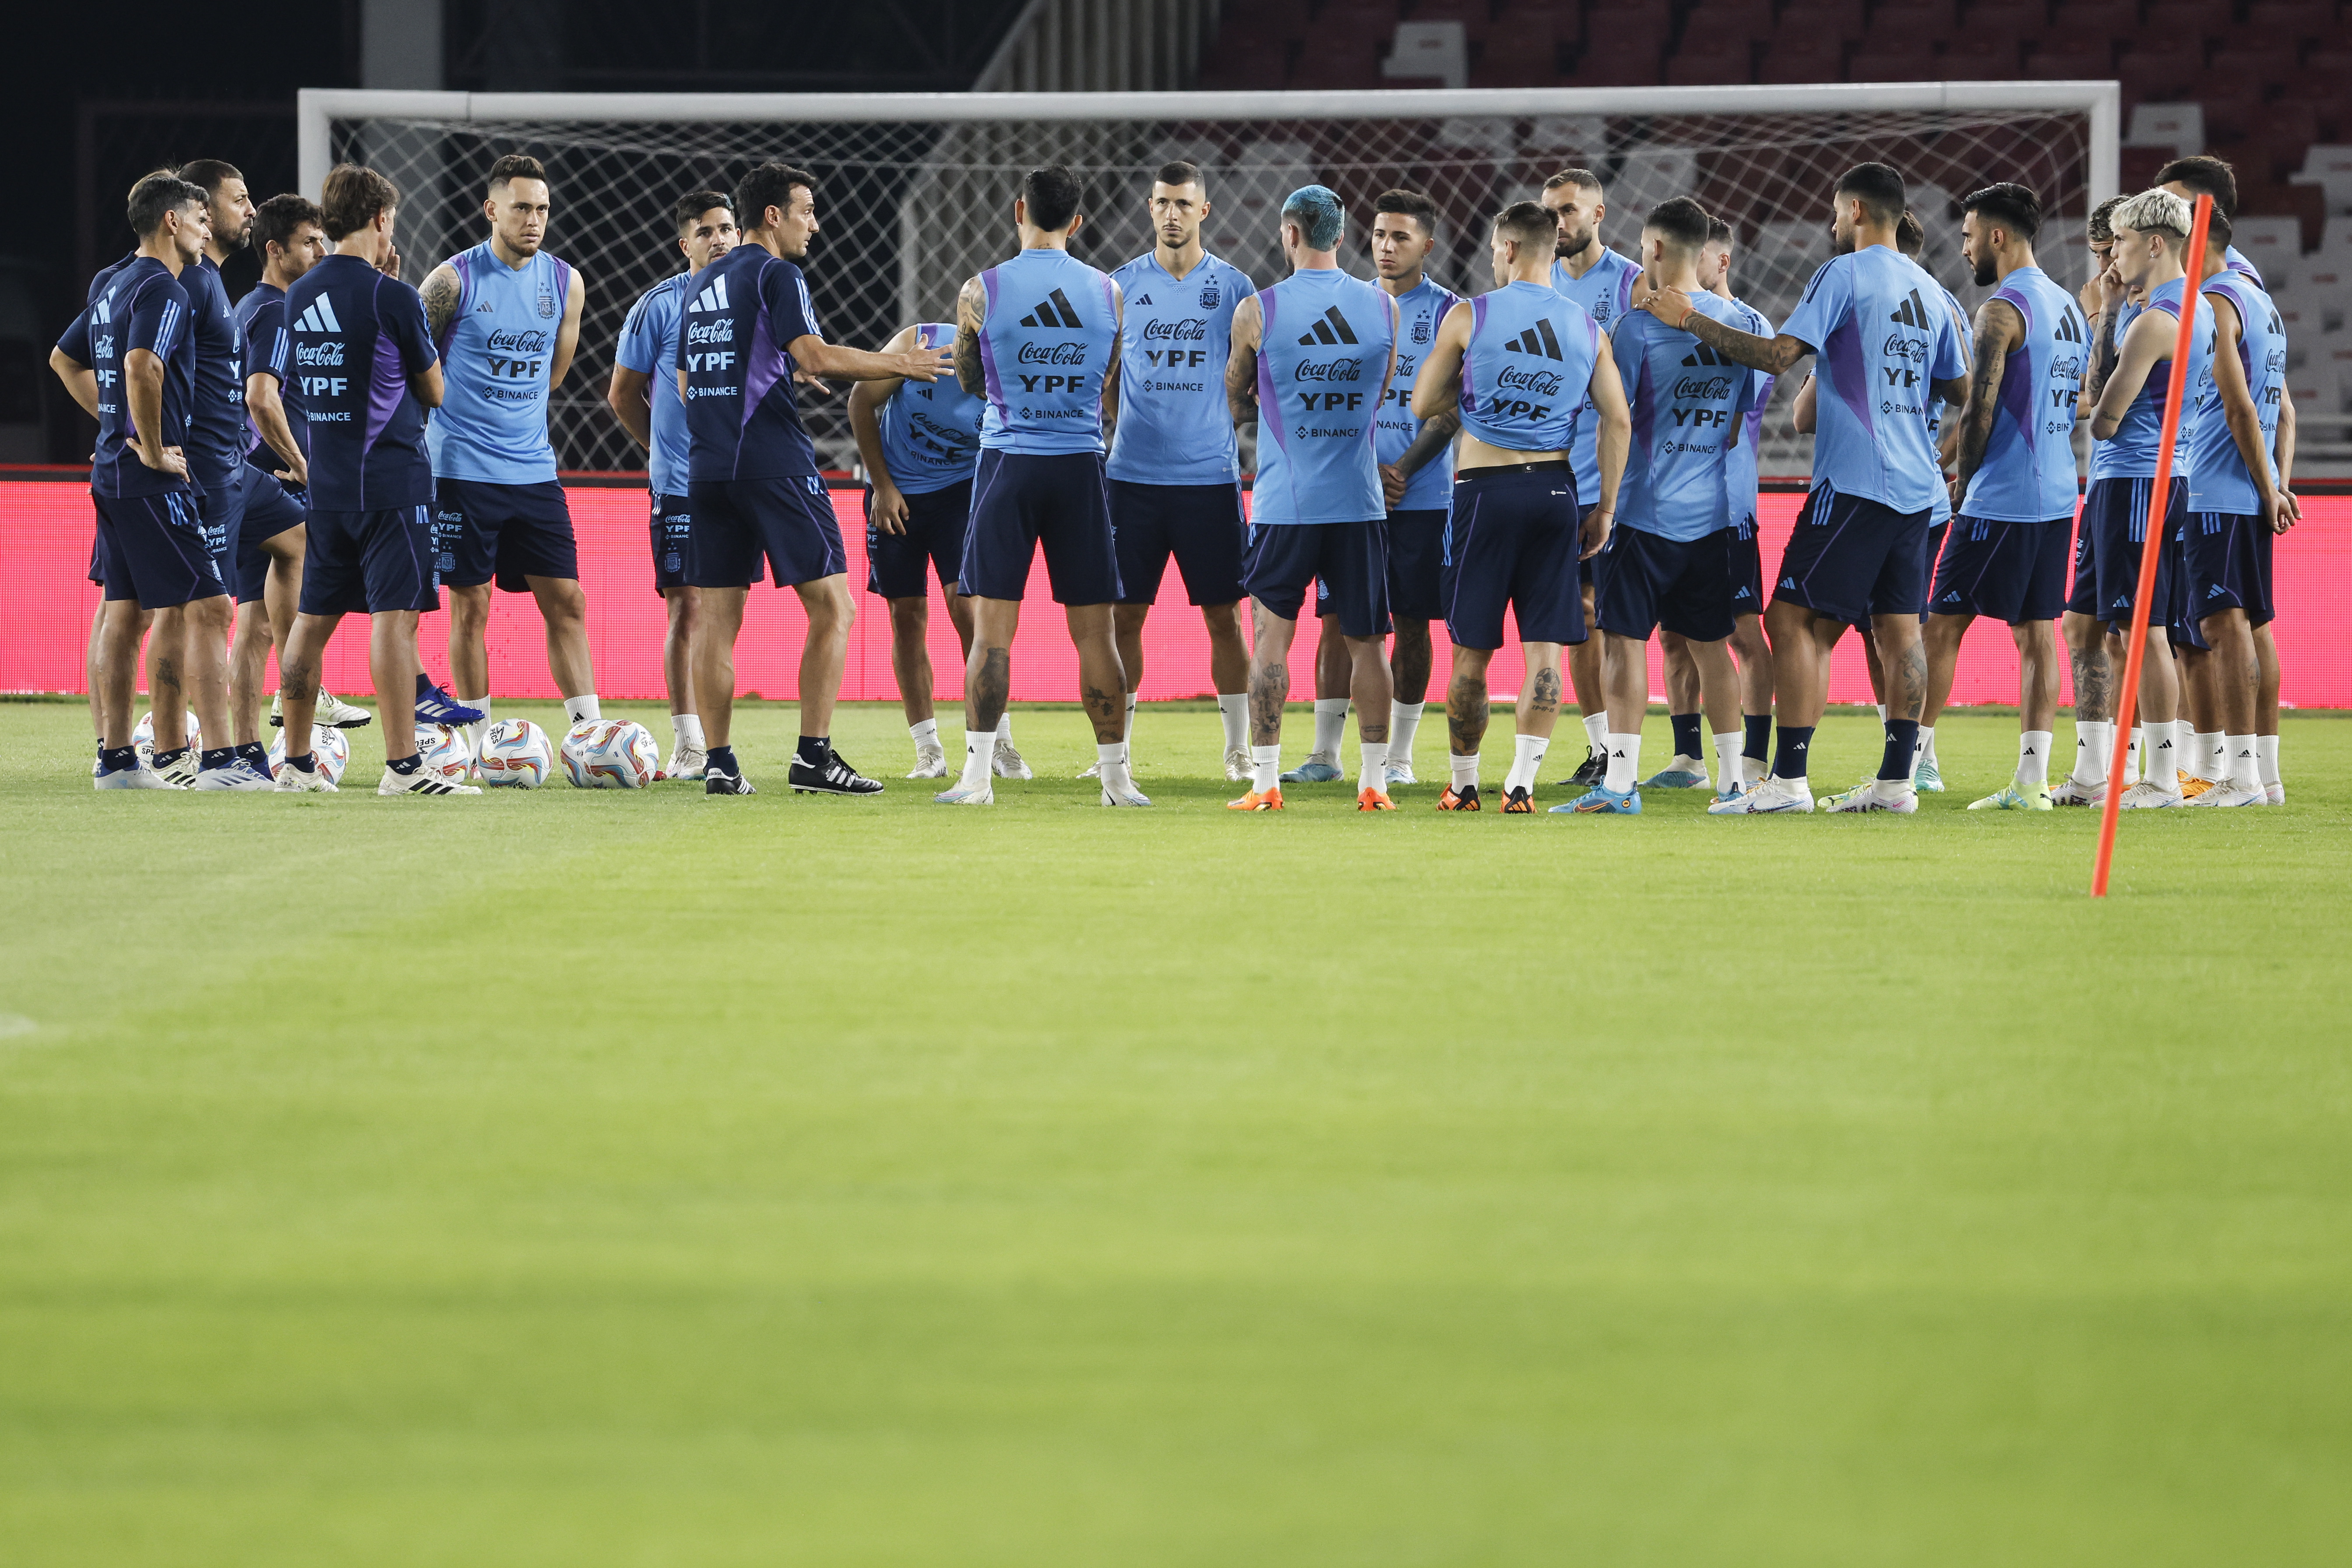 Formación posible de Argentina ante Indonesia en el partido amistoso internacional